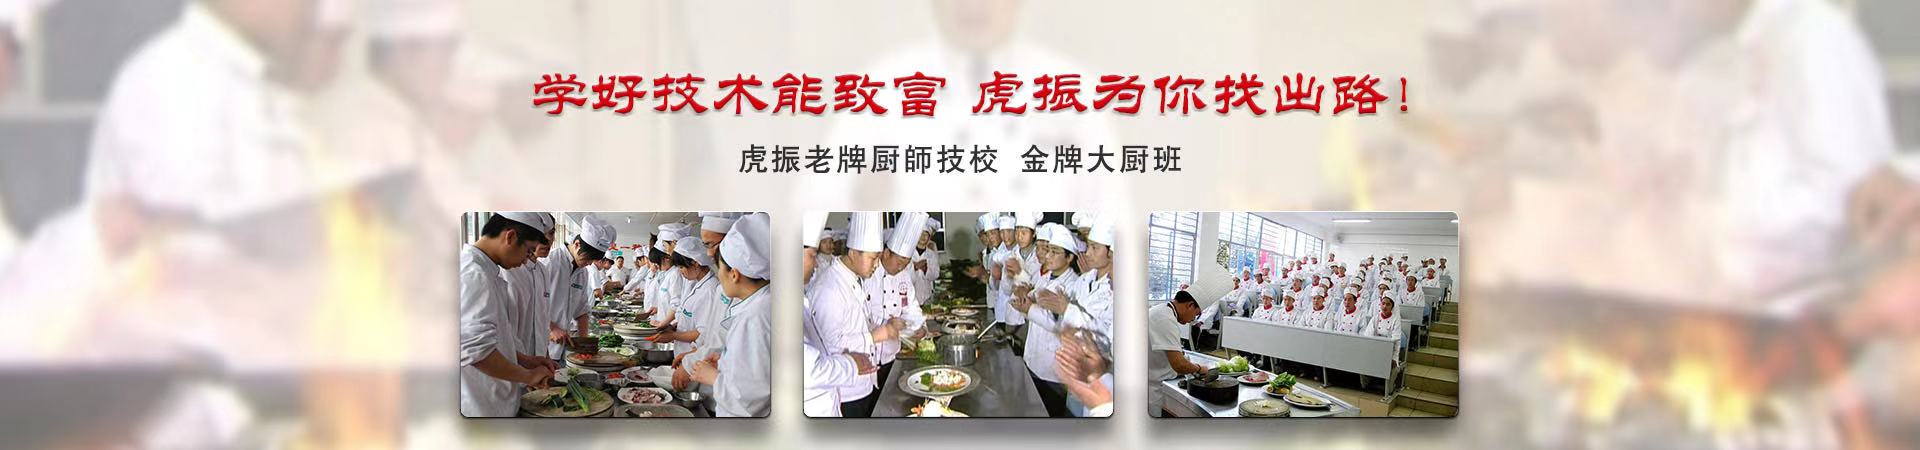 烹饪专业、新乡本地烹饪专业、新乡、新乡烹饪专业